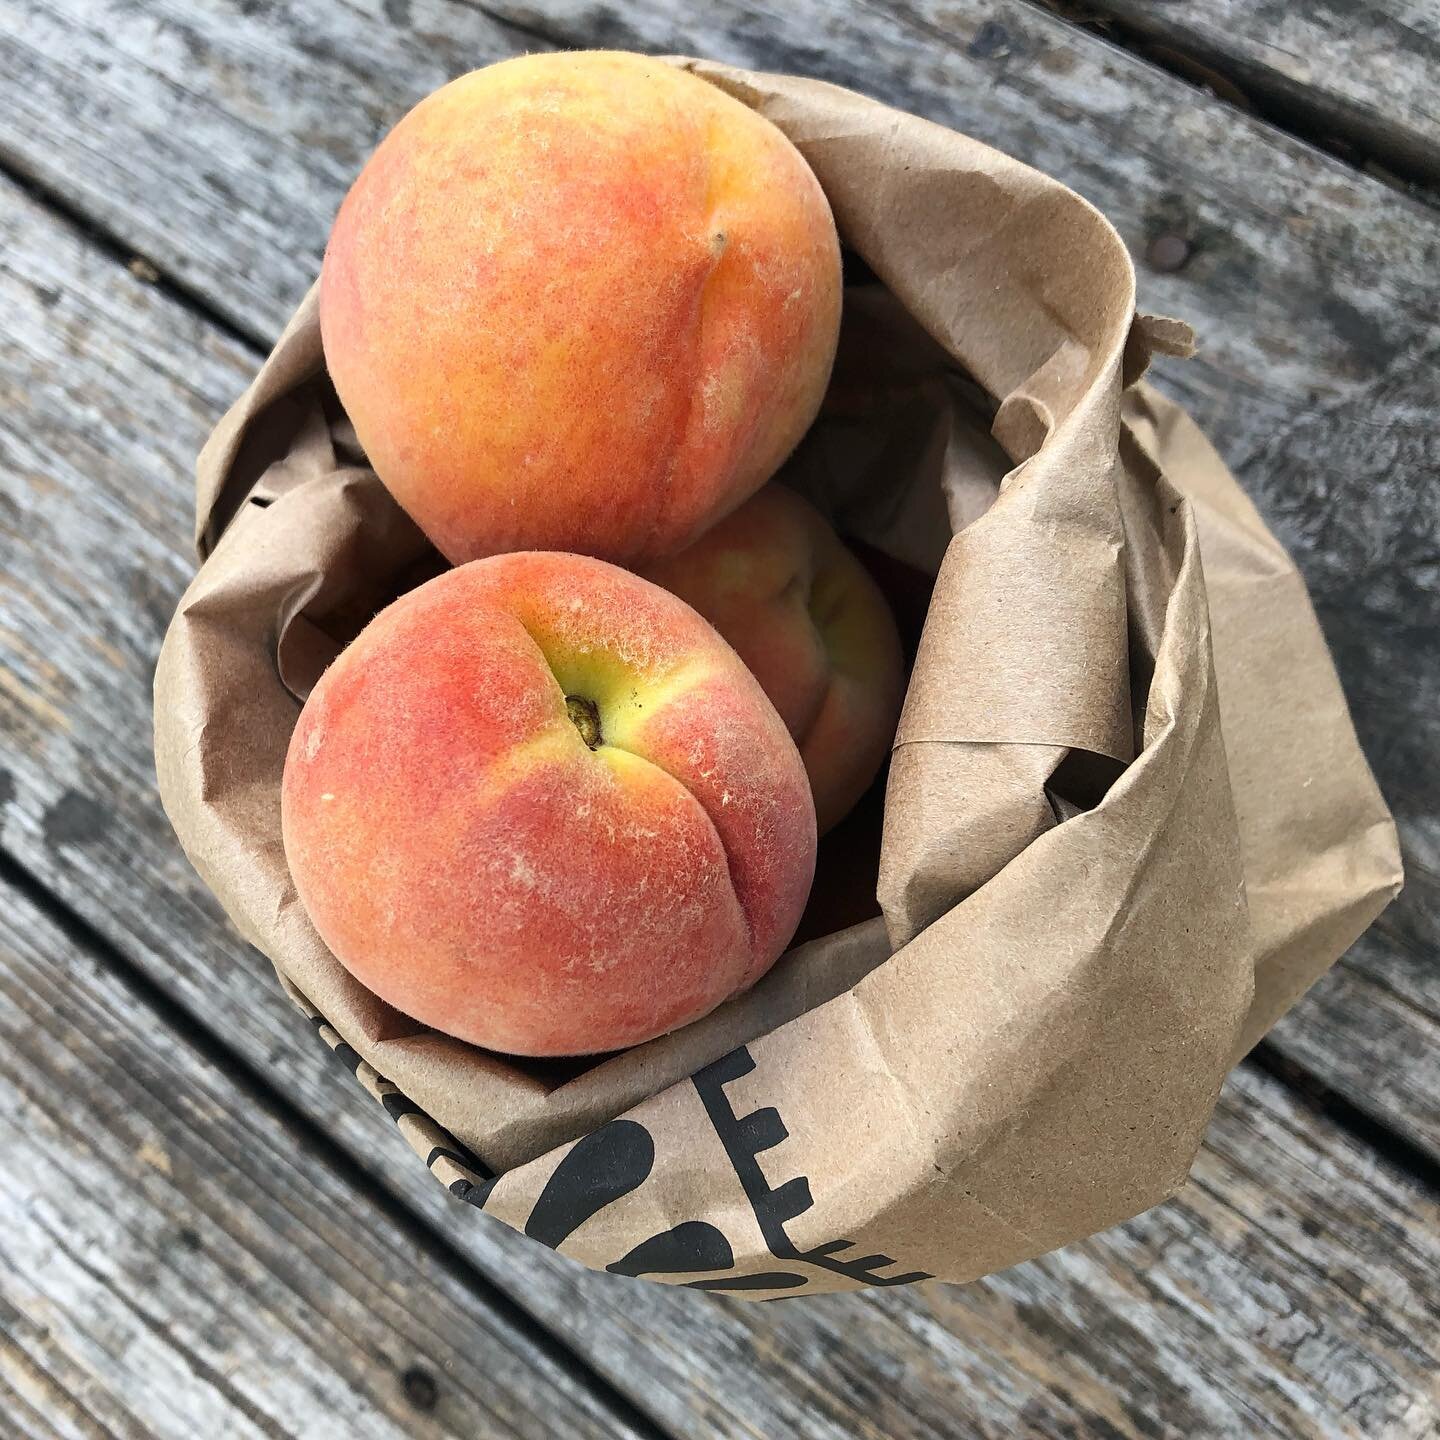 Peach season 🍑